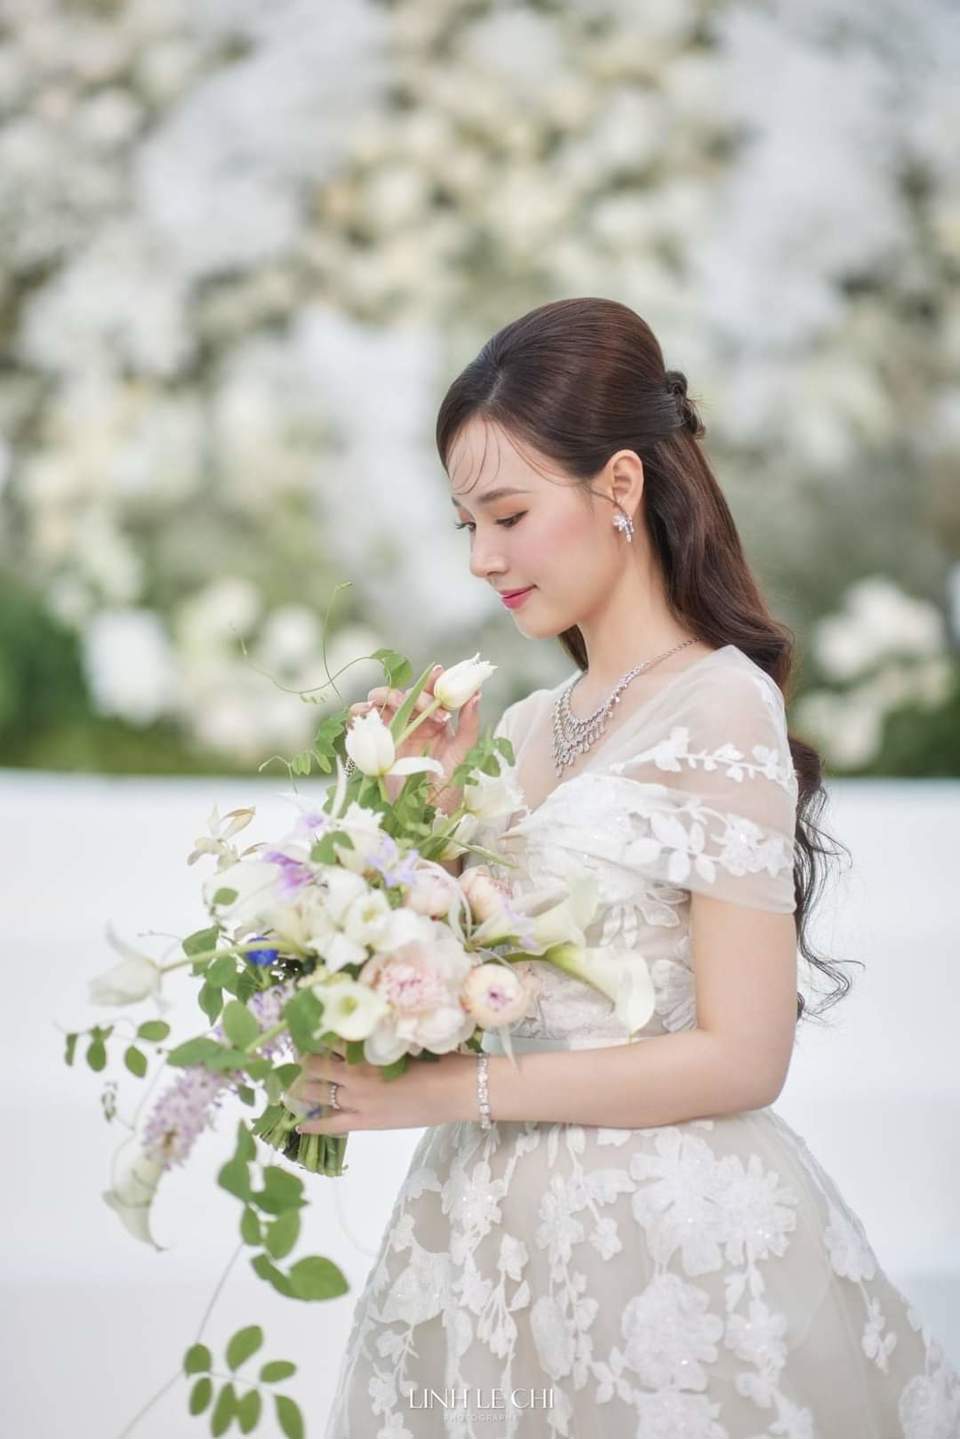 Dàn sao Việt dự đám cưới của Midu và thiếu gia kém tuổi - Ảnh 13